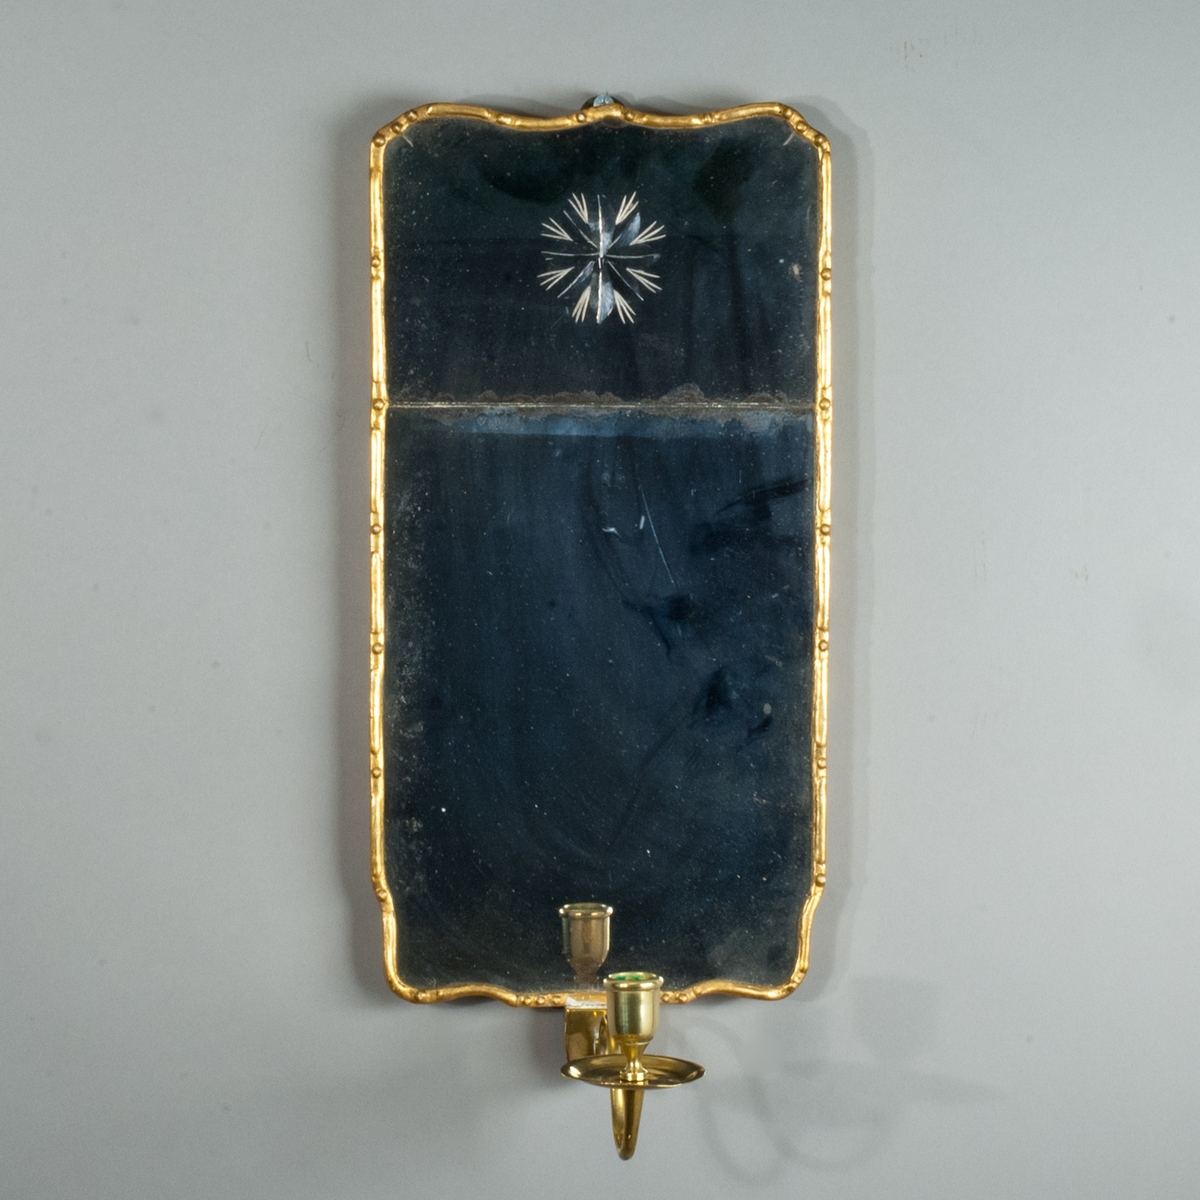 Lampett av spegelglas, rektangulär konturerad form med två glas infattade i tunn guldfärgad list med gles pärldekor. På det övre glaset en stjärna med strålar inslipad från baksidan. Bakstycke av trä. Ljusarm av mässing.